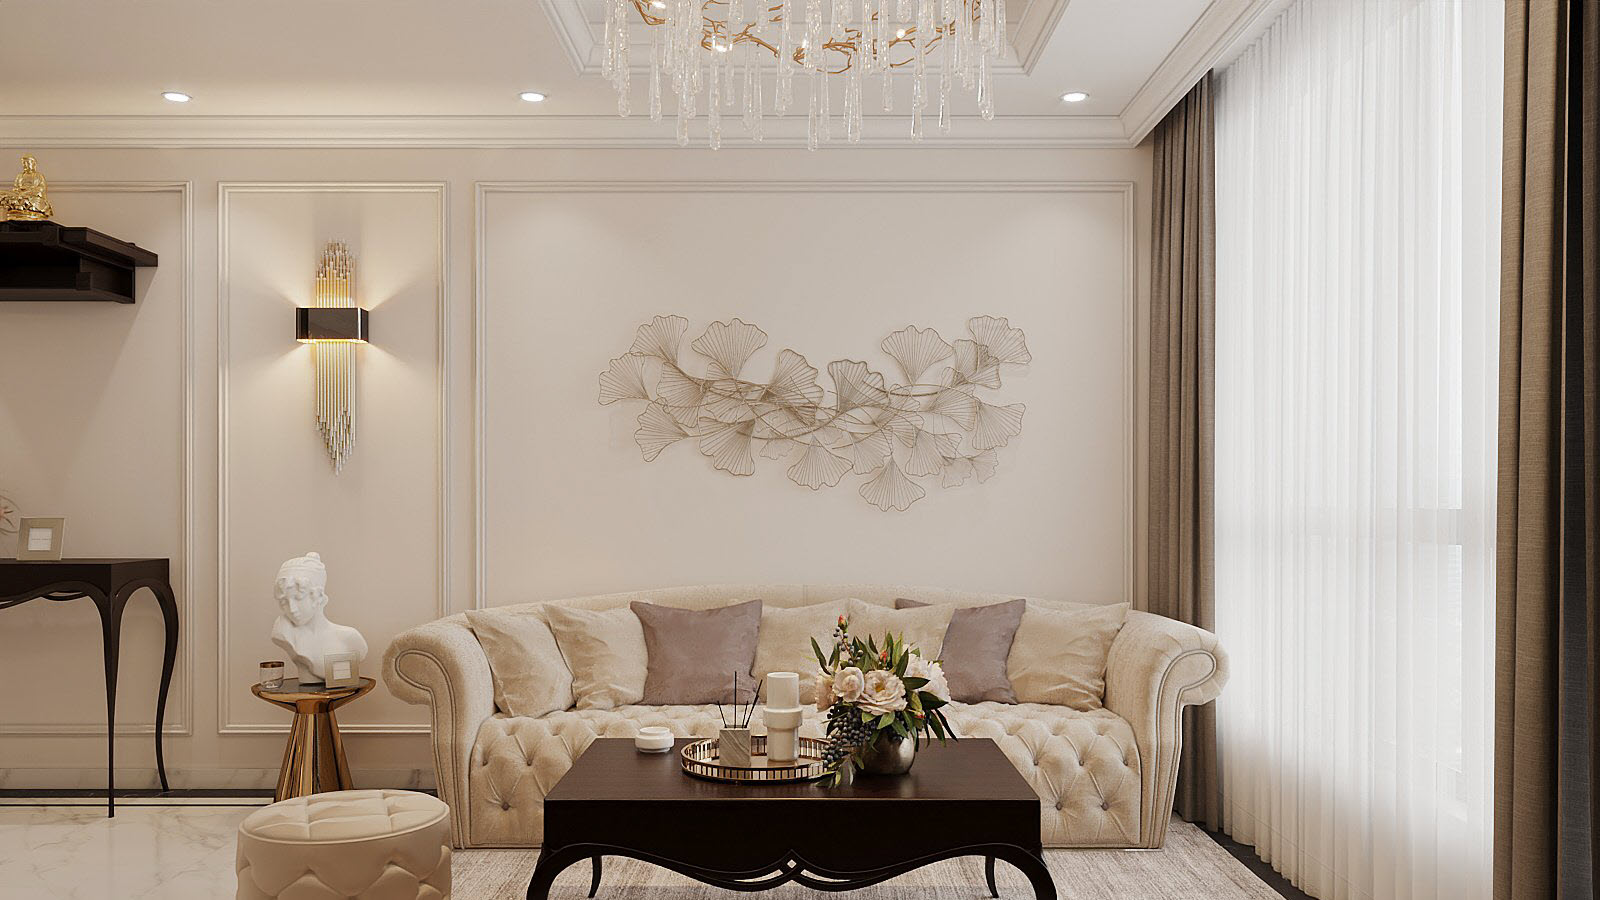 Bộ ghế sofa màu be sang trọng, kiểu dáng cổ điển nhẹ nhàng, hài hòa với tổng thể không gian chung. Tường decor đơn giản mà ấn tượng.